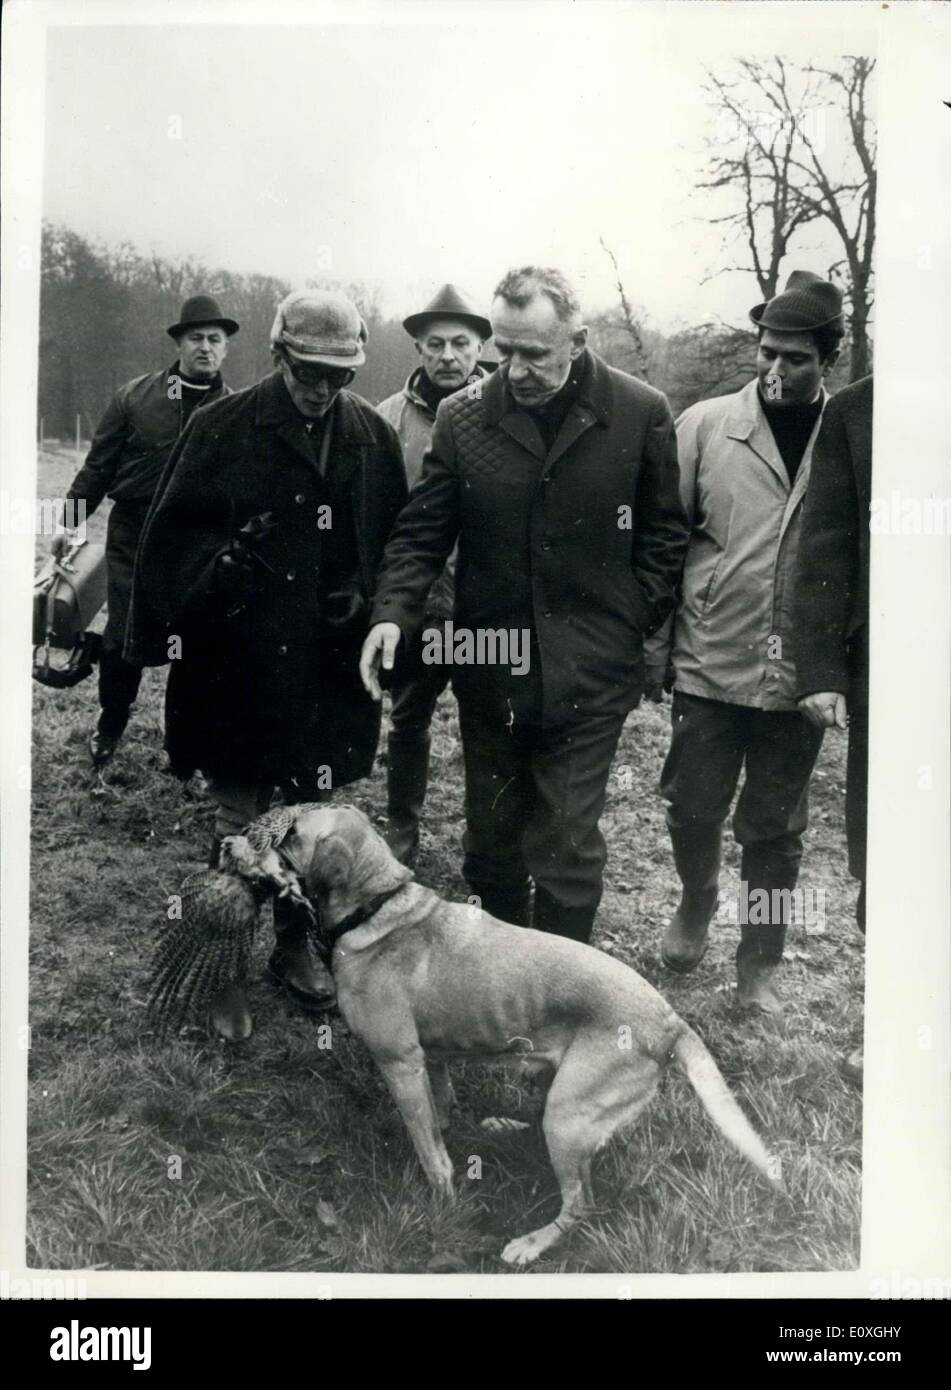 8. Dezember 1966 - besucht Kossygin Fasan Jagd in Rambouillet. Der sowjetische Ministerpräsident. Herr Kosygin, tragen ein Khaki shooting anzupassen und tragen eigene doppelläufigen Schrotflinte, Fasanjagd in den Wäldern in Rambouillet, Frankreich, heute ging. Foto zeigt Herr Alexei Kosygin, an einem der Hunde Retrieveing ein Fasan in Rambouillet heute aussieht. Stockfoto